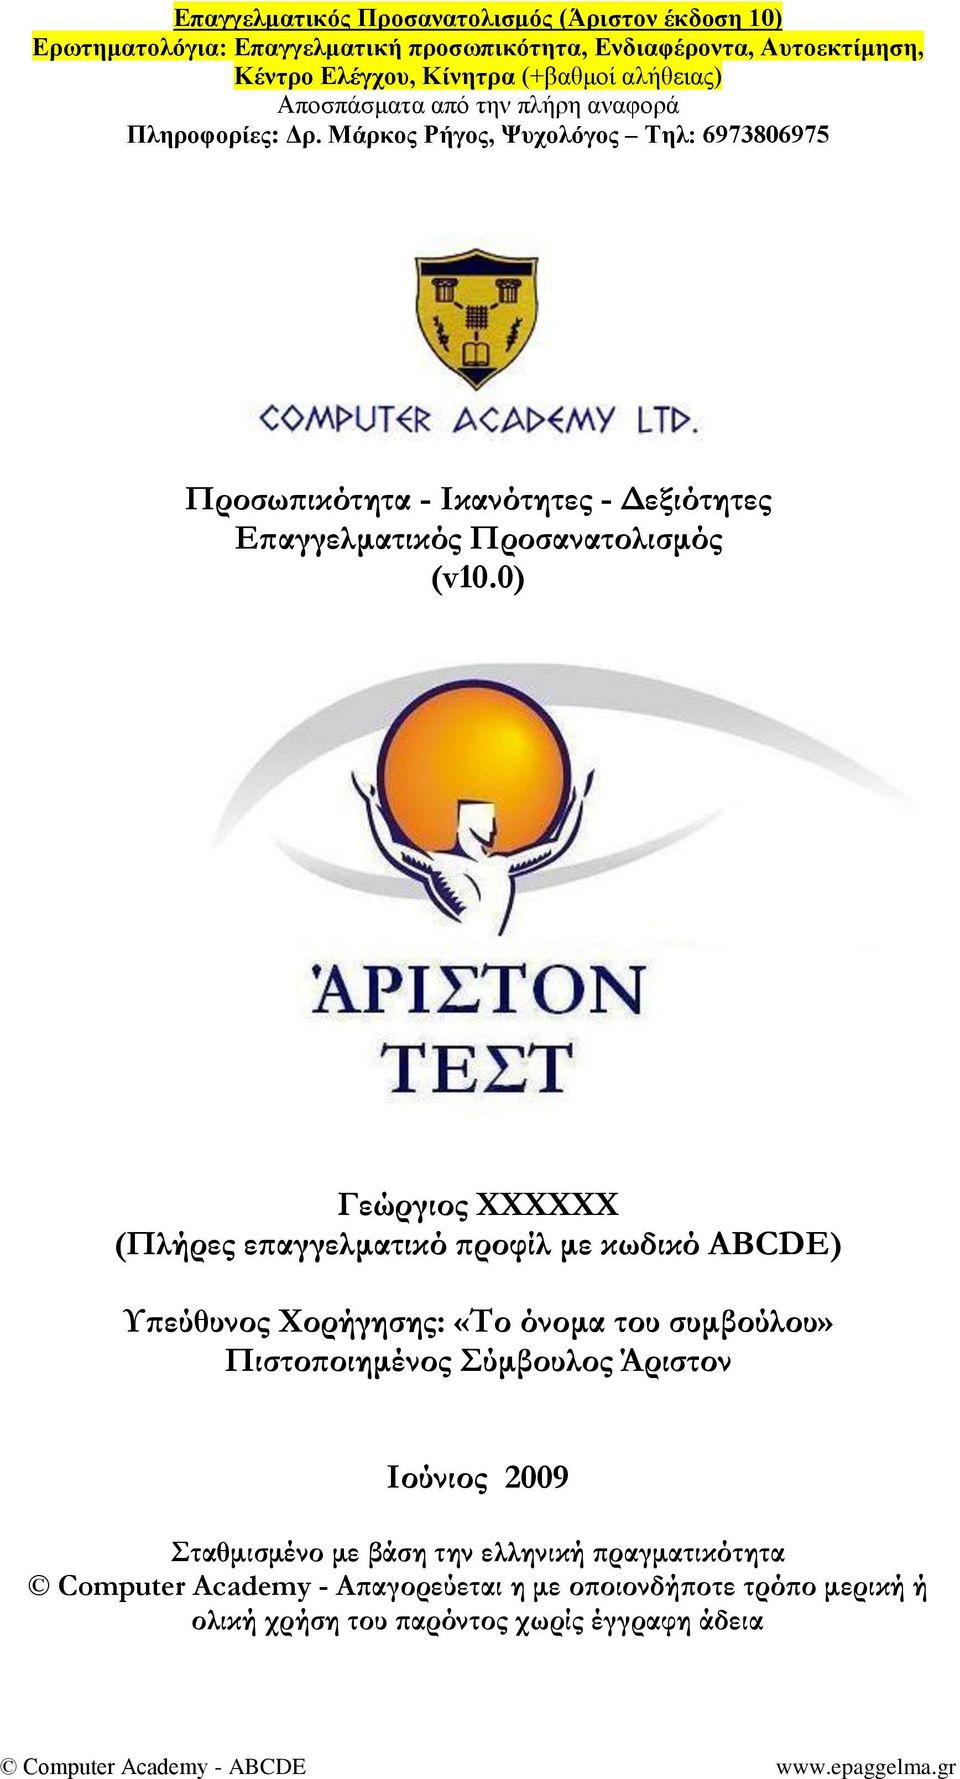 του συμβούλου» Πιστοποιημένος ύμβουλος Άριστον Ιούνιος 2009 ταθμισμένο με βάση την ελληνική